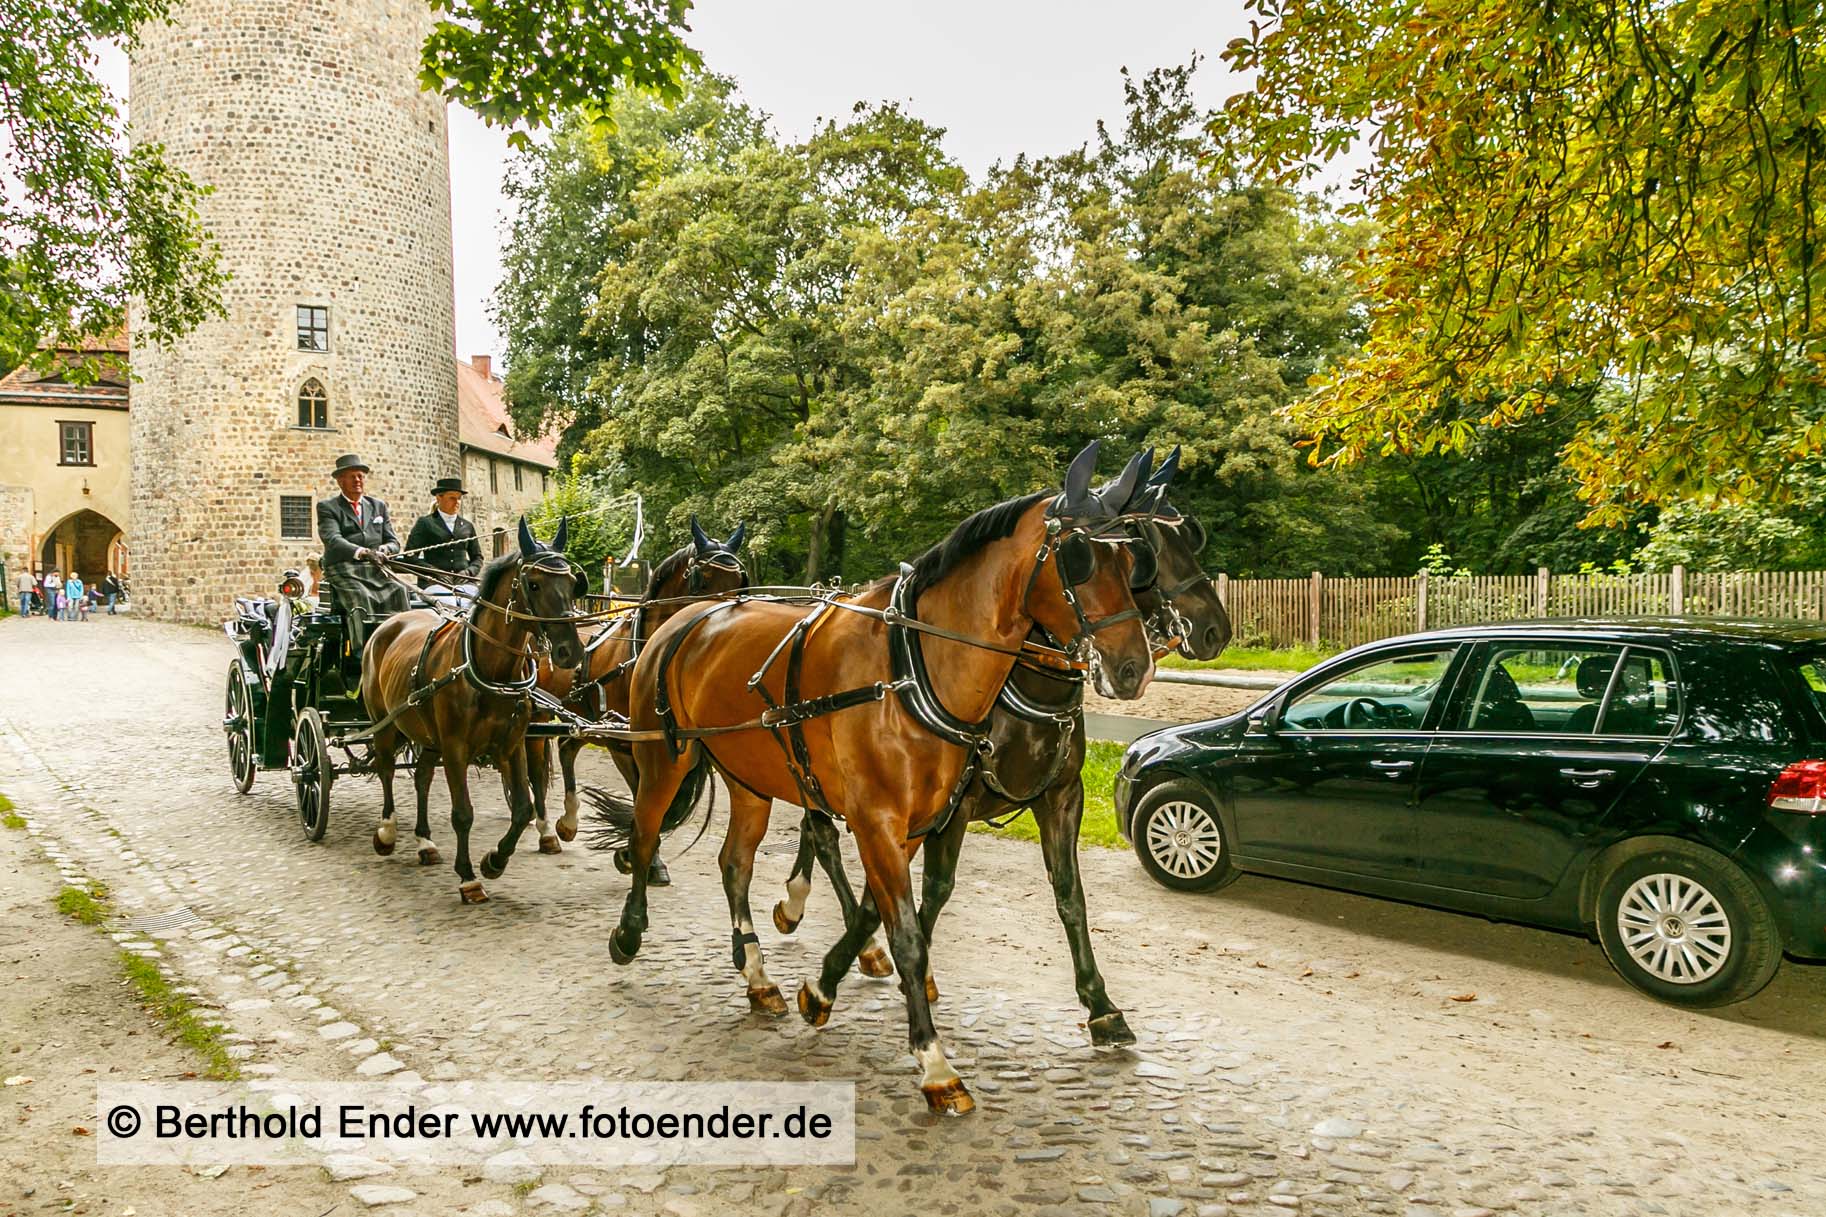 Heiraten auf Burg Rabenstein im Fläming - Fotostudio Ender Oranienbaum-Wörlitz